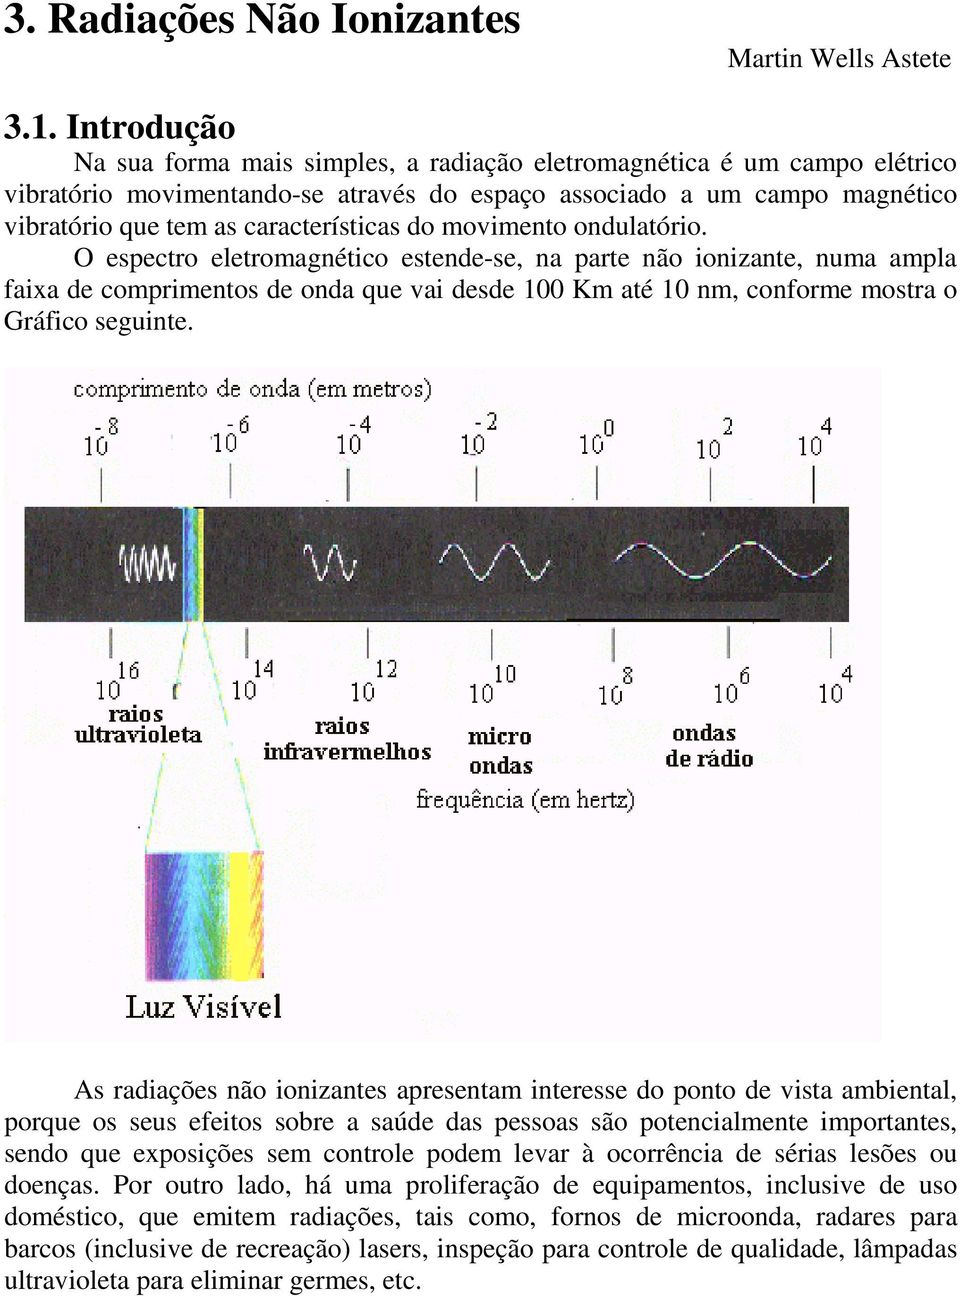 do movimento ondulatório. O espectro eletromagnético estende-se, na parte não ionizante, numa ampla faixa de comprimentos de onda que vai desde 100 Km até 10 nm, conforme mostra o Gráfico seguinte.